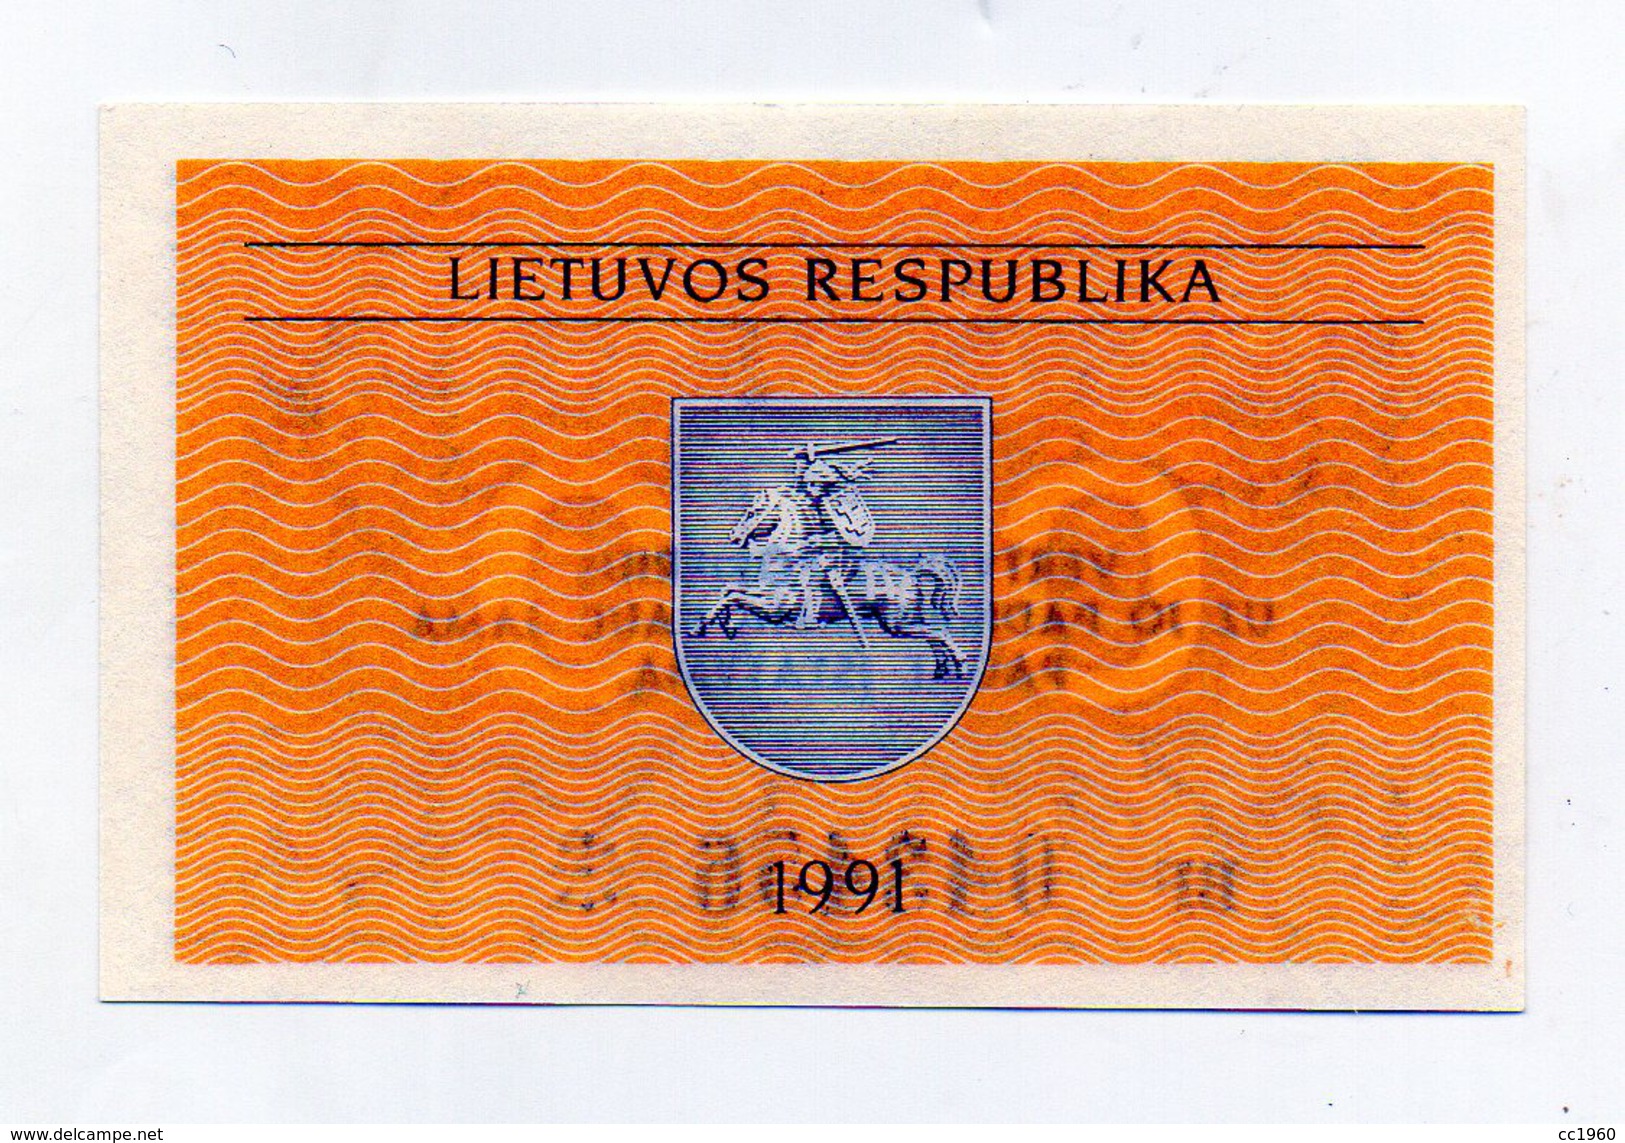 Lituania - 1991 - Banconota Da 0,10 Talonas - Nuova -  (FDC1614) - Lituania